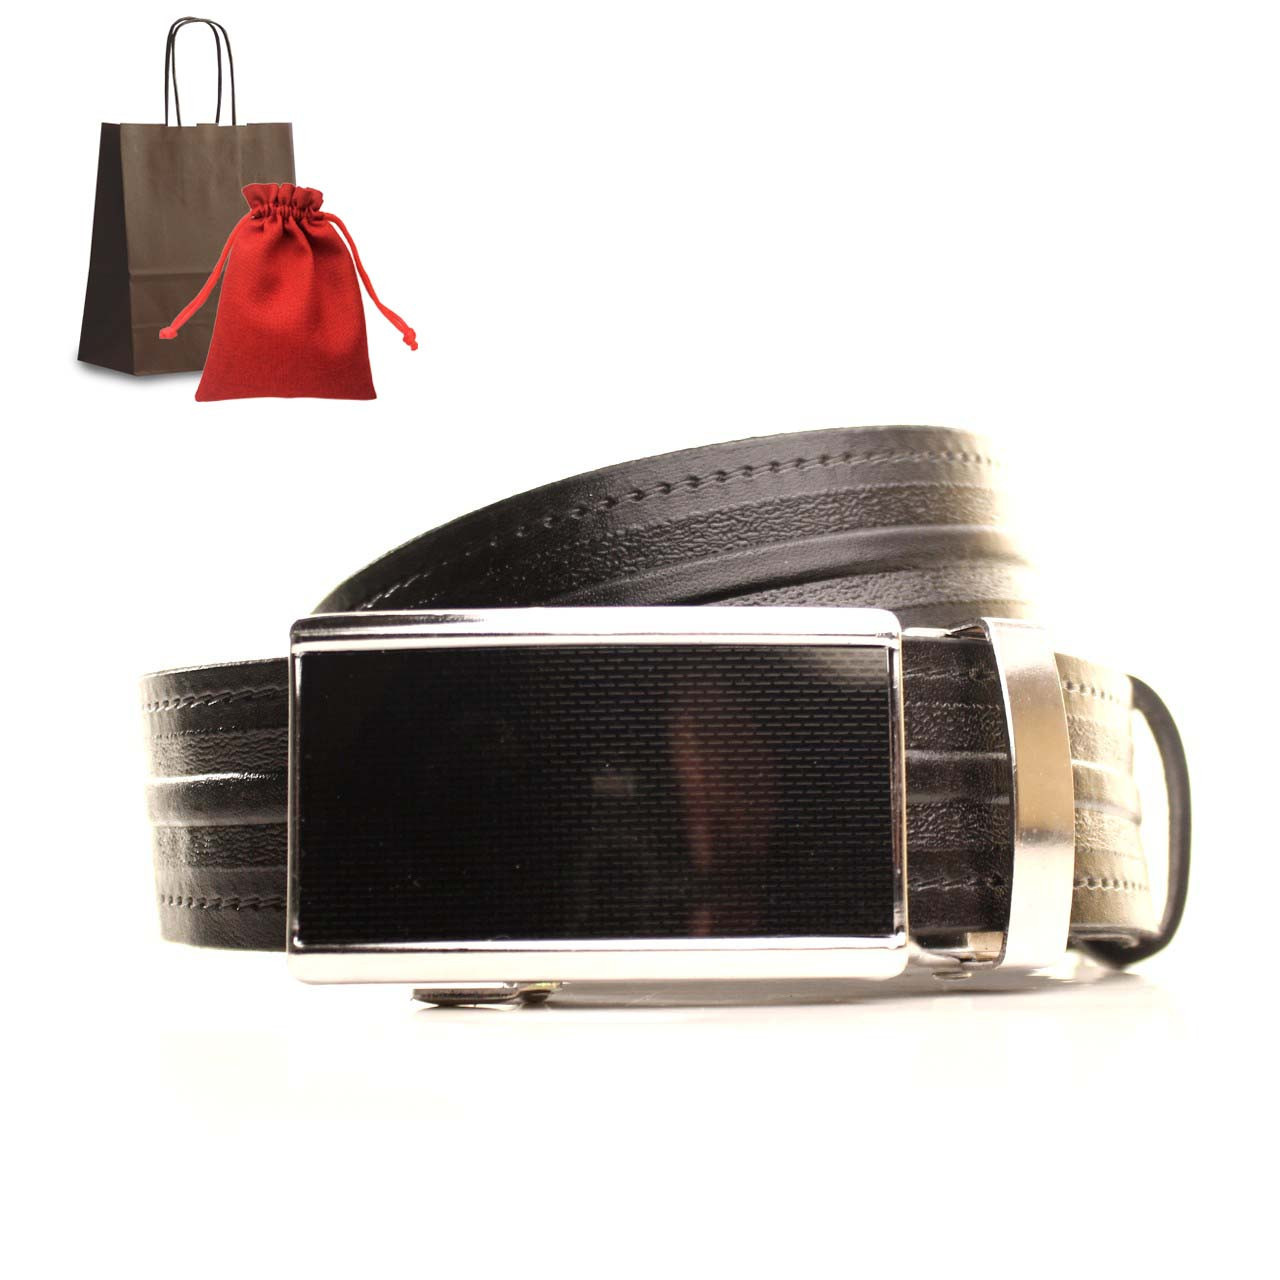 

Ремень Lazar кожаный на подарок черный L35U1A73-M 120-125 см